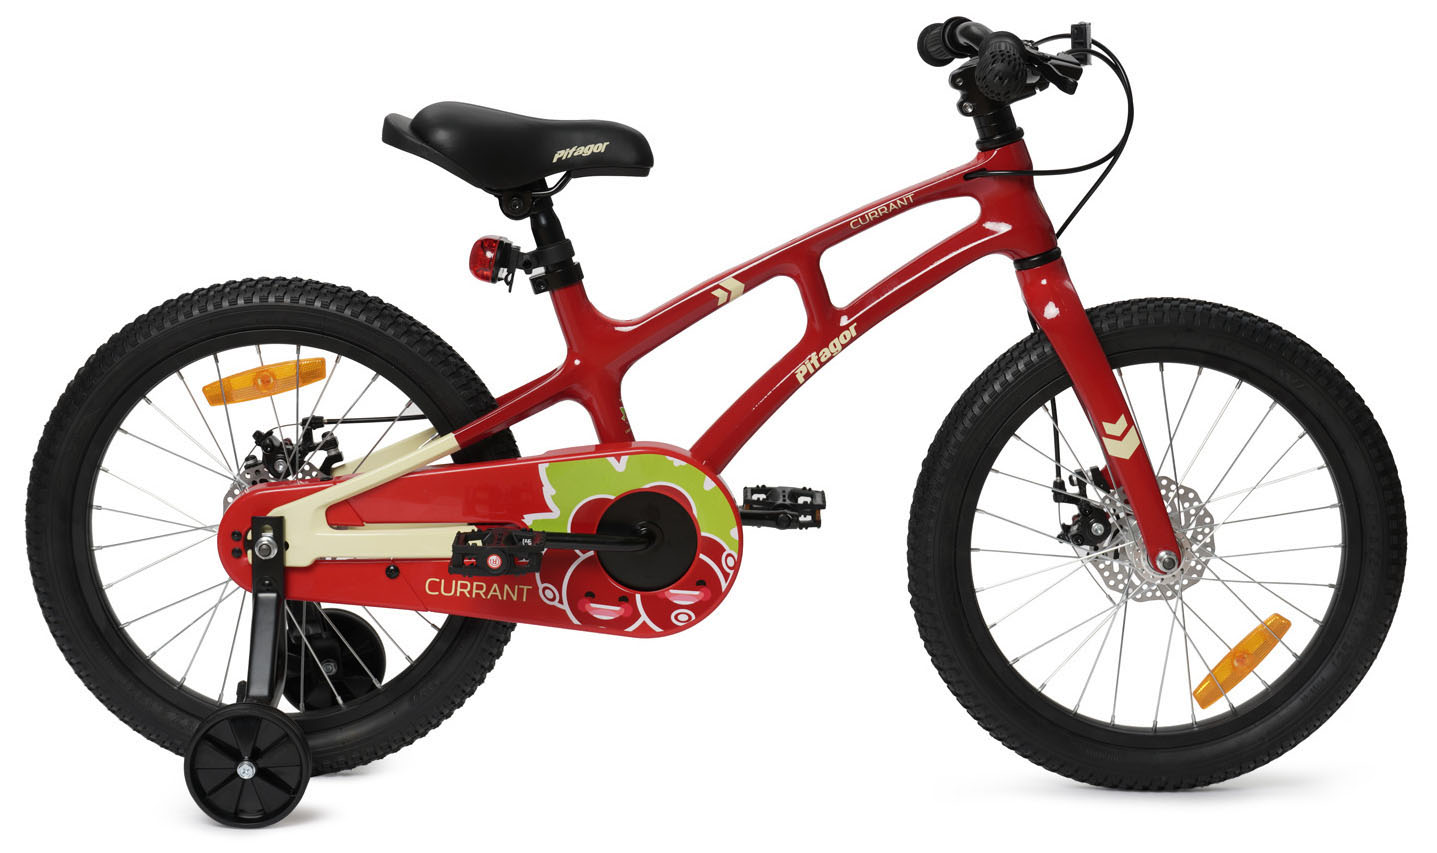  Отзывы о Детском велосипеде Pifagor Currant 18 2022